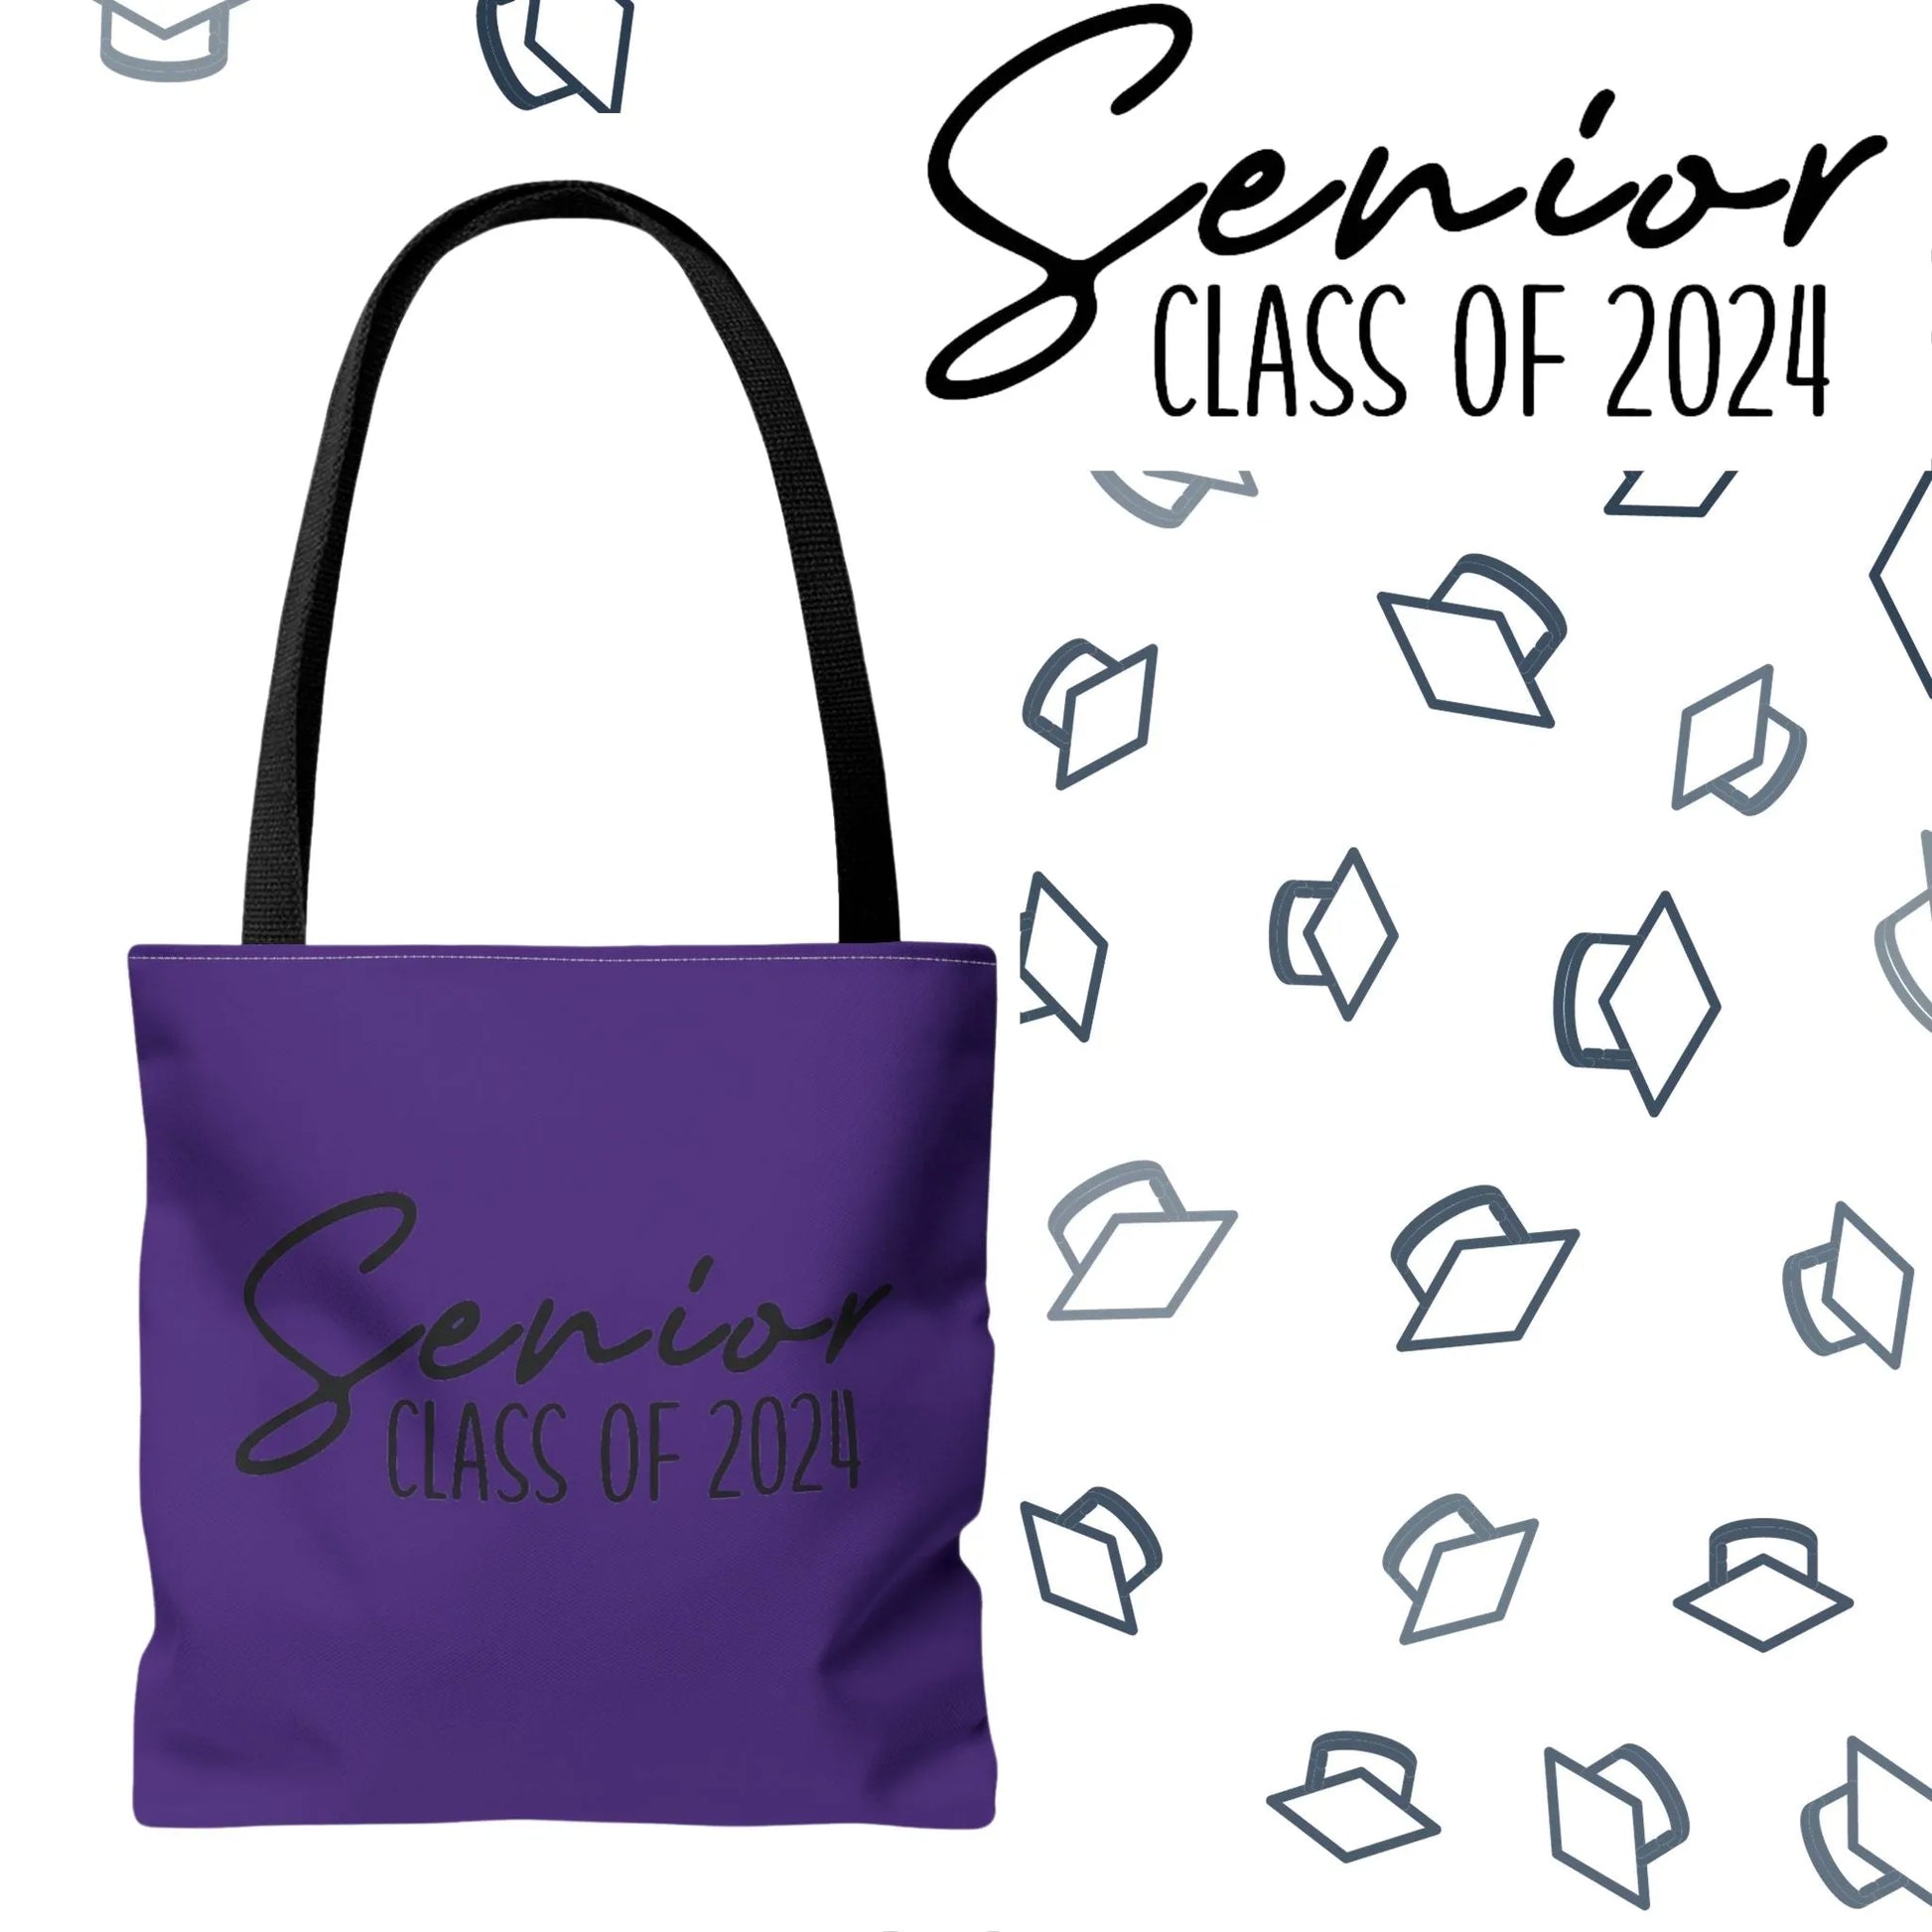 Senior Class of 2024 Tote Bag - Class of 2024 Tote Bag - Senior 2024 Tote Bag purple